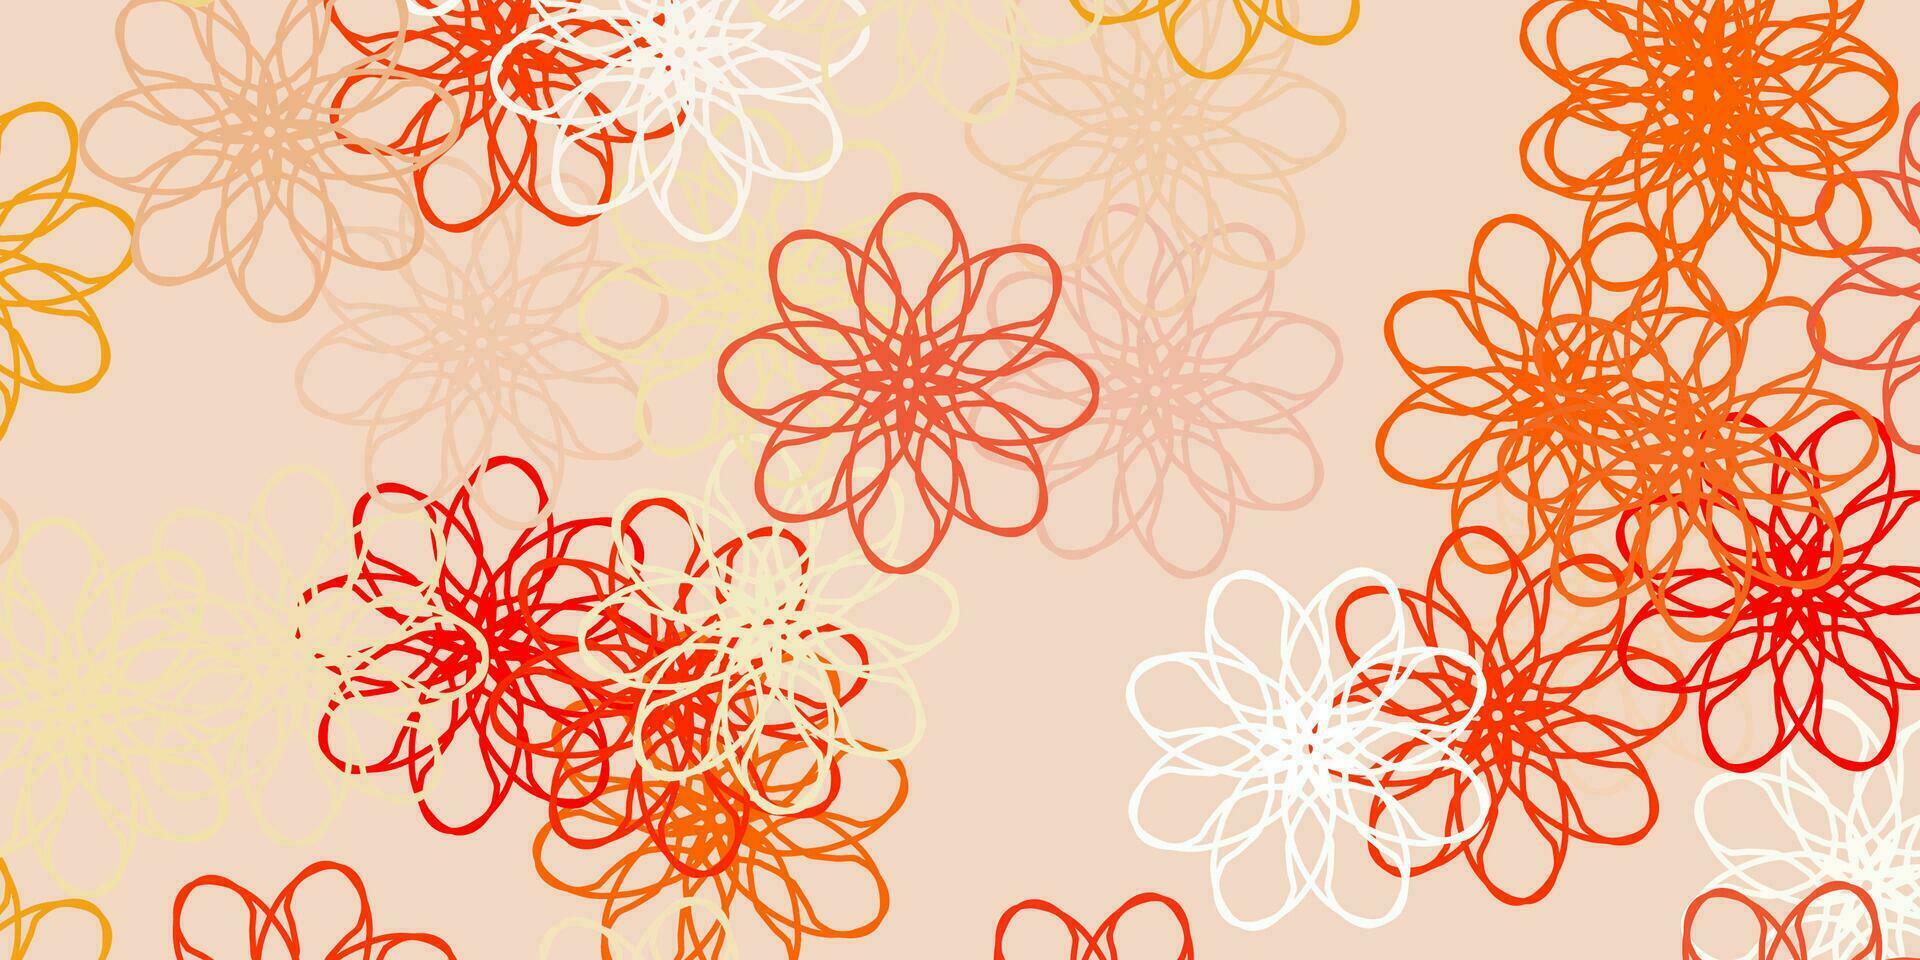 textura de doodle de vetor laranja claro com flores.